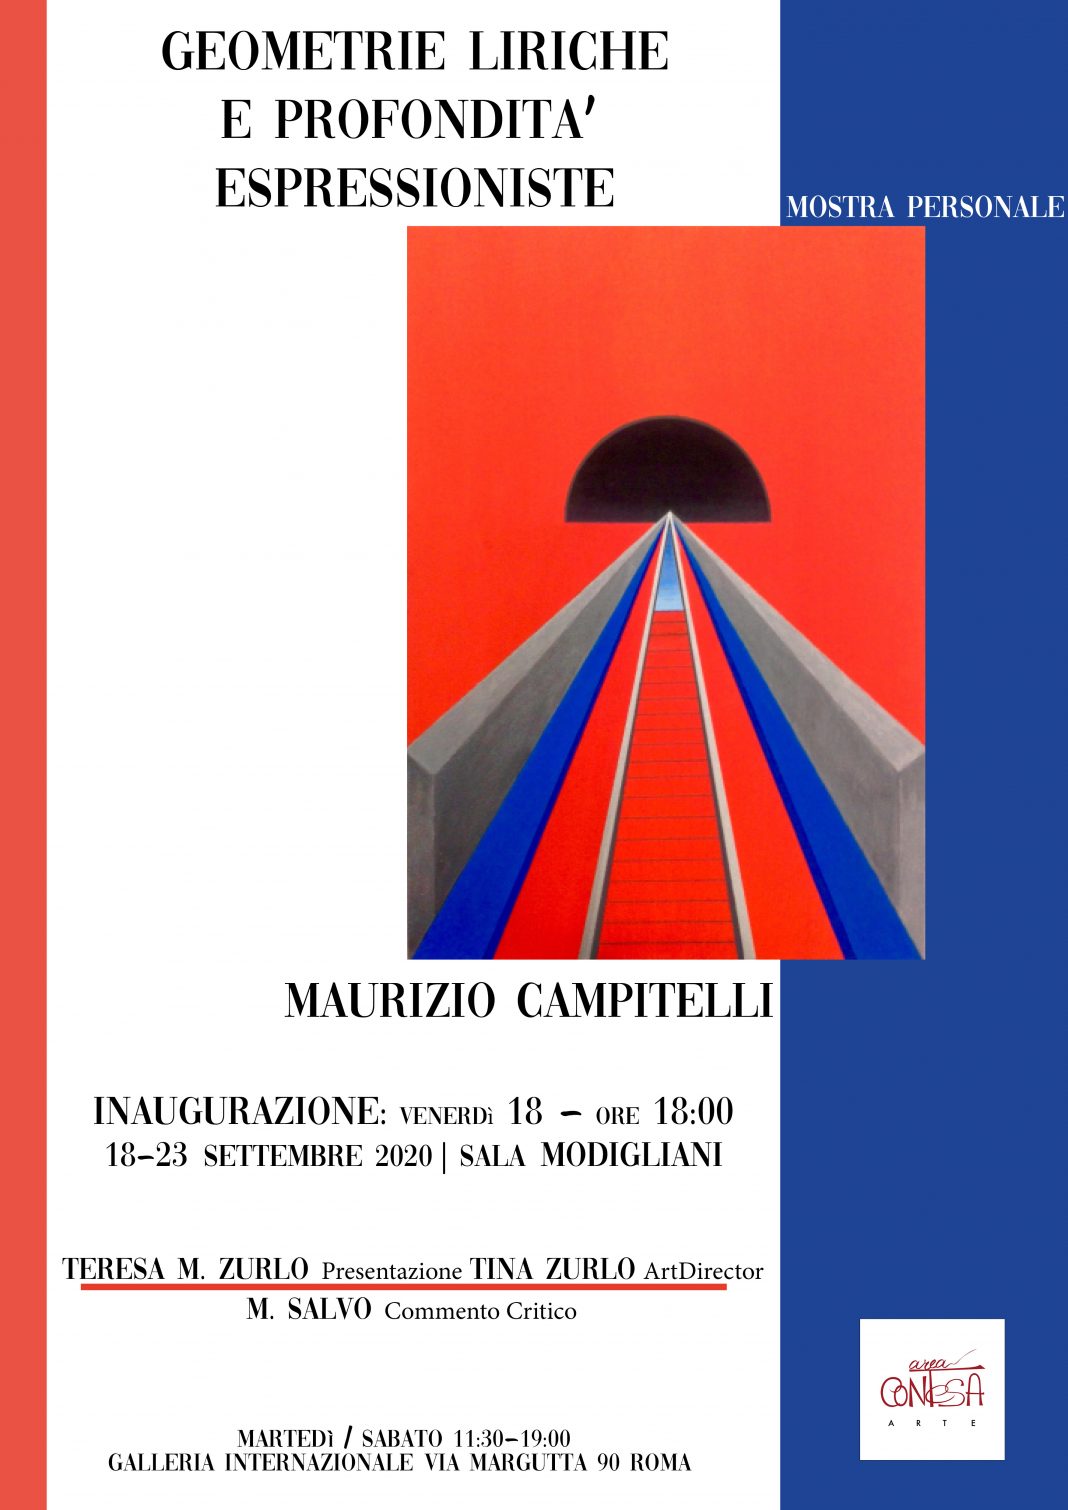 Maurizio Campitelli – Geometrie liriche e profondità espressionistehttps://www.exibart.com/repository/media/formidable/11/locandineA33-1068x1510.jpg